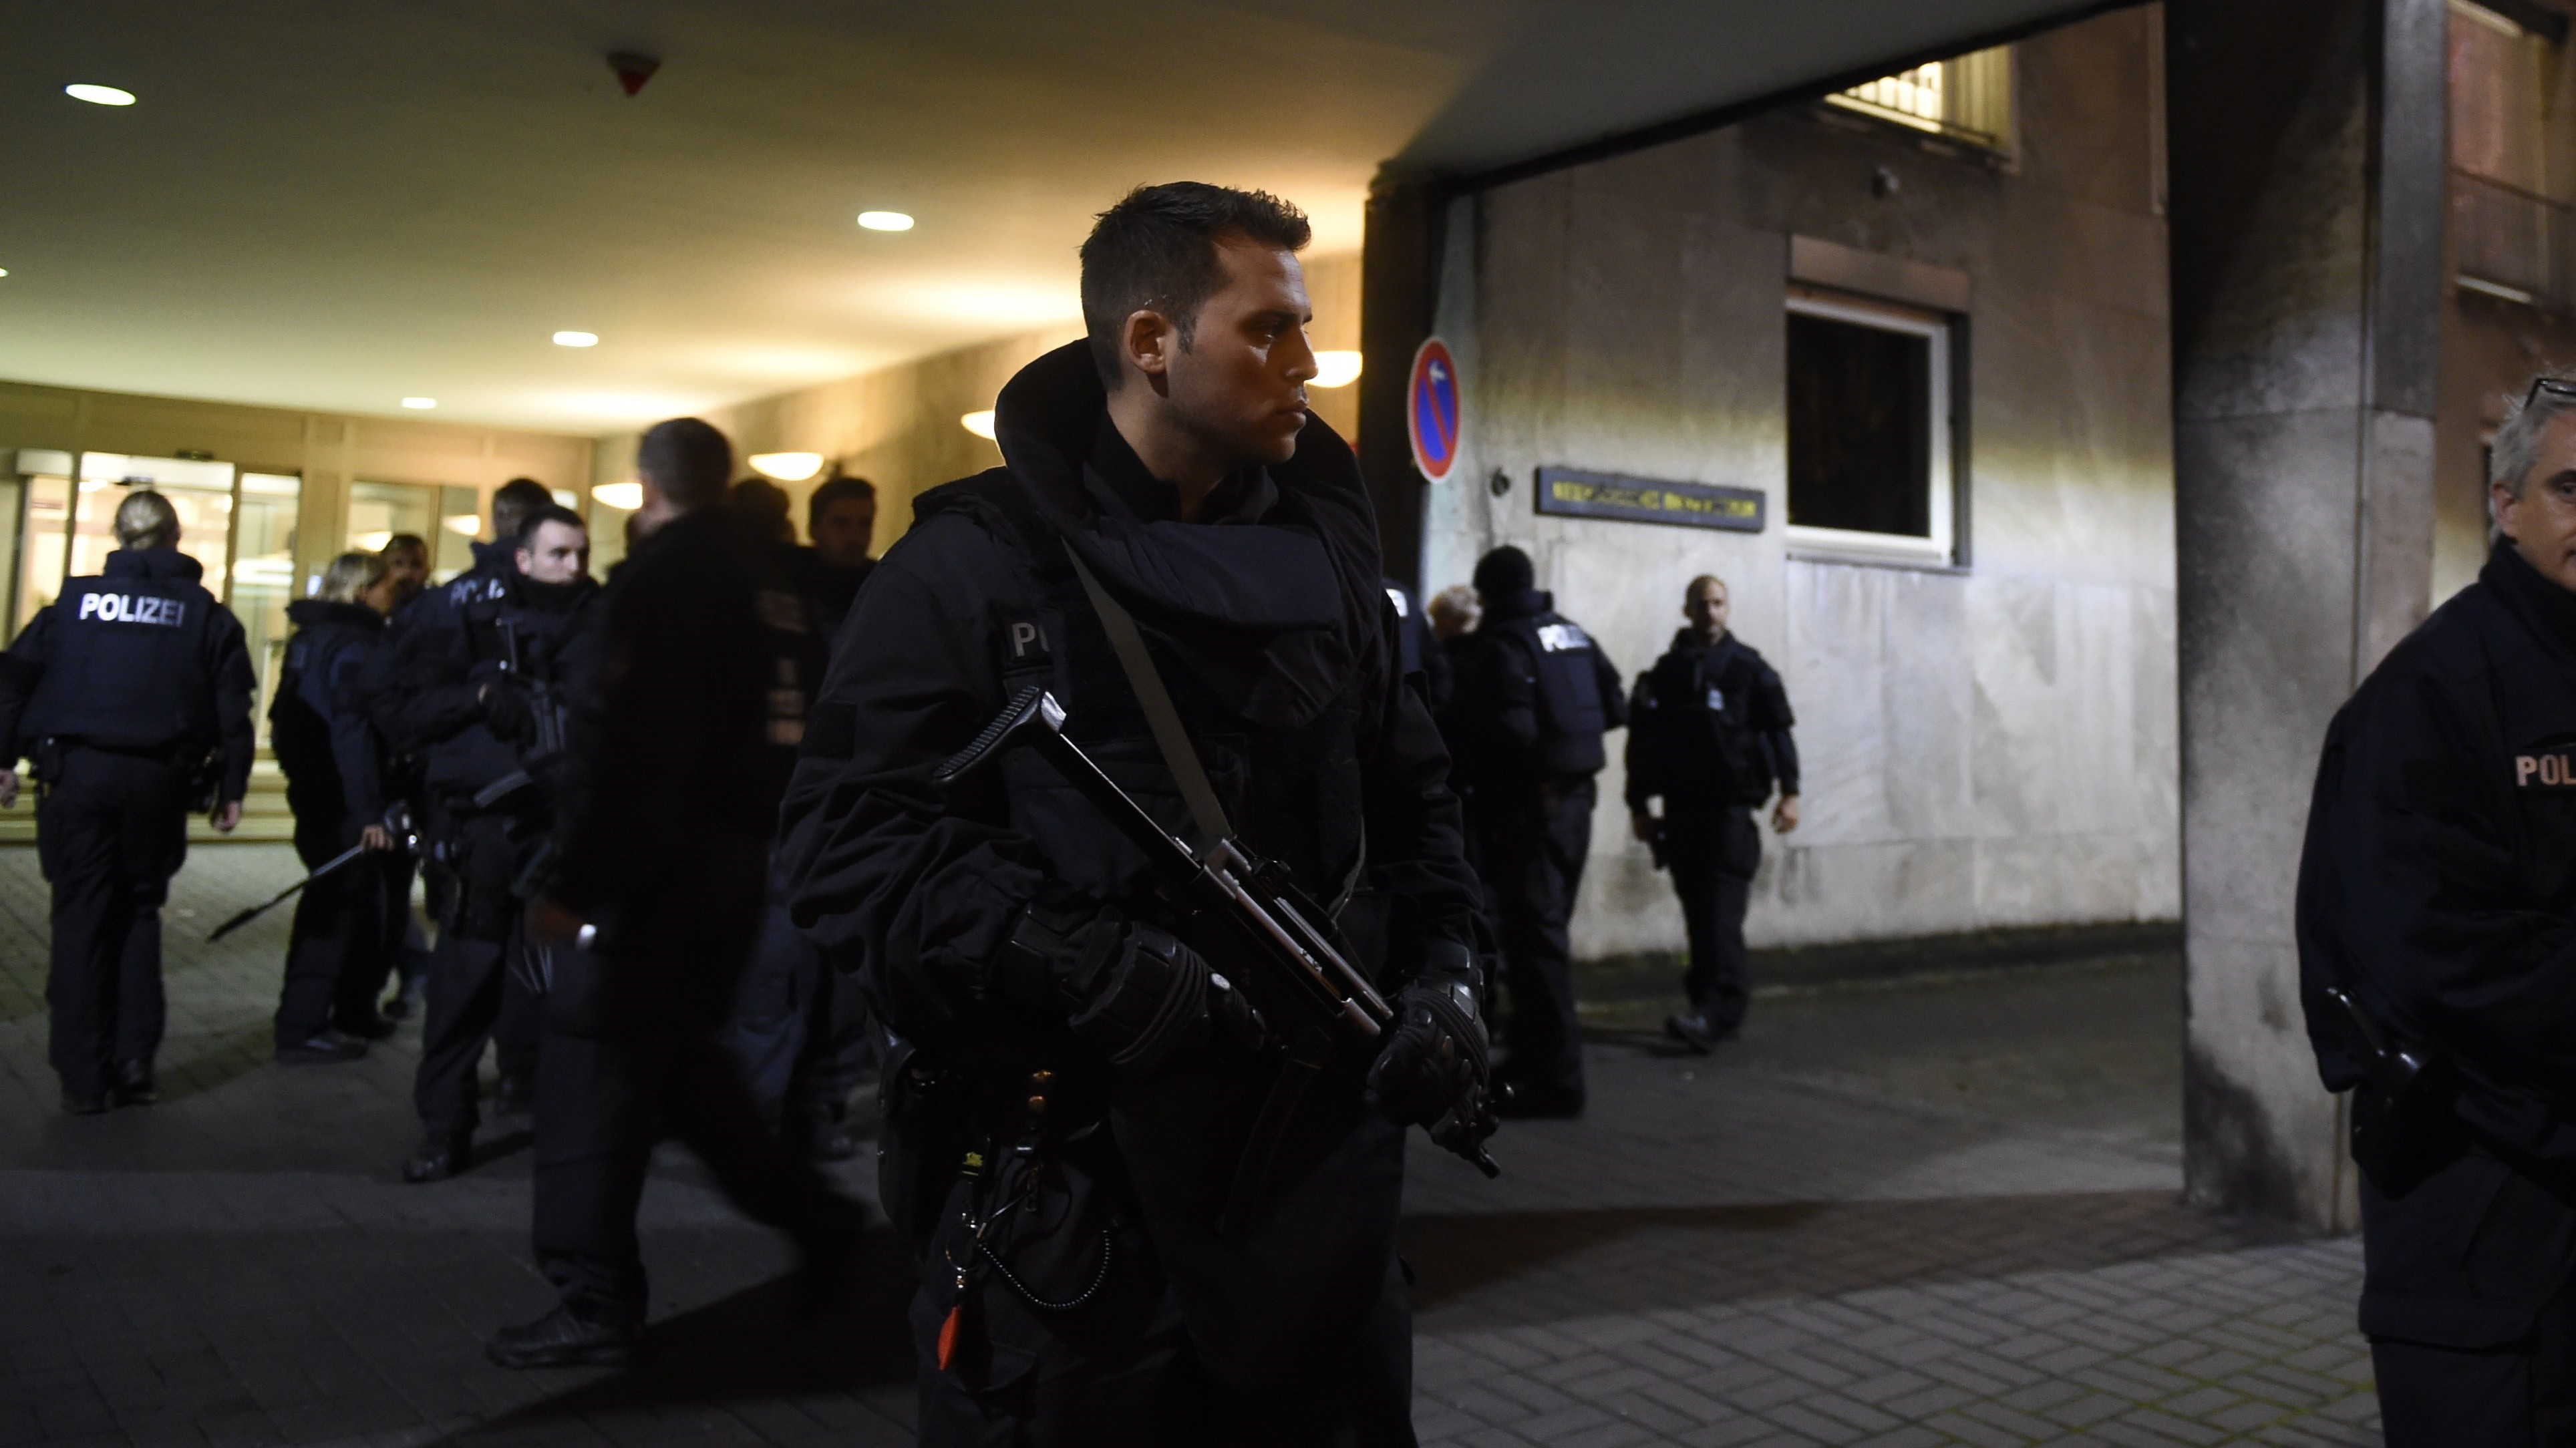 ambulance explosives hannover germany stadium